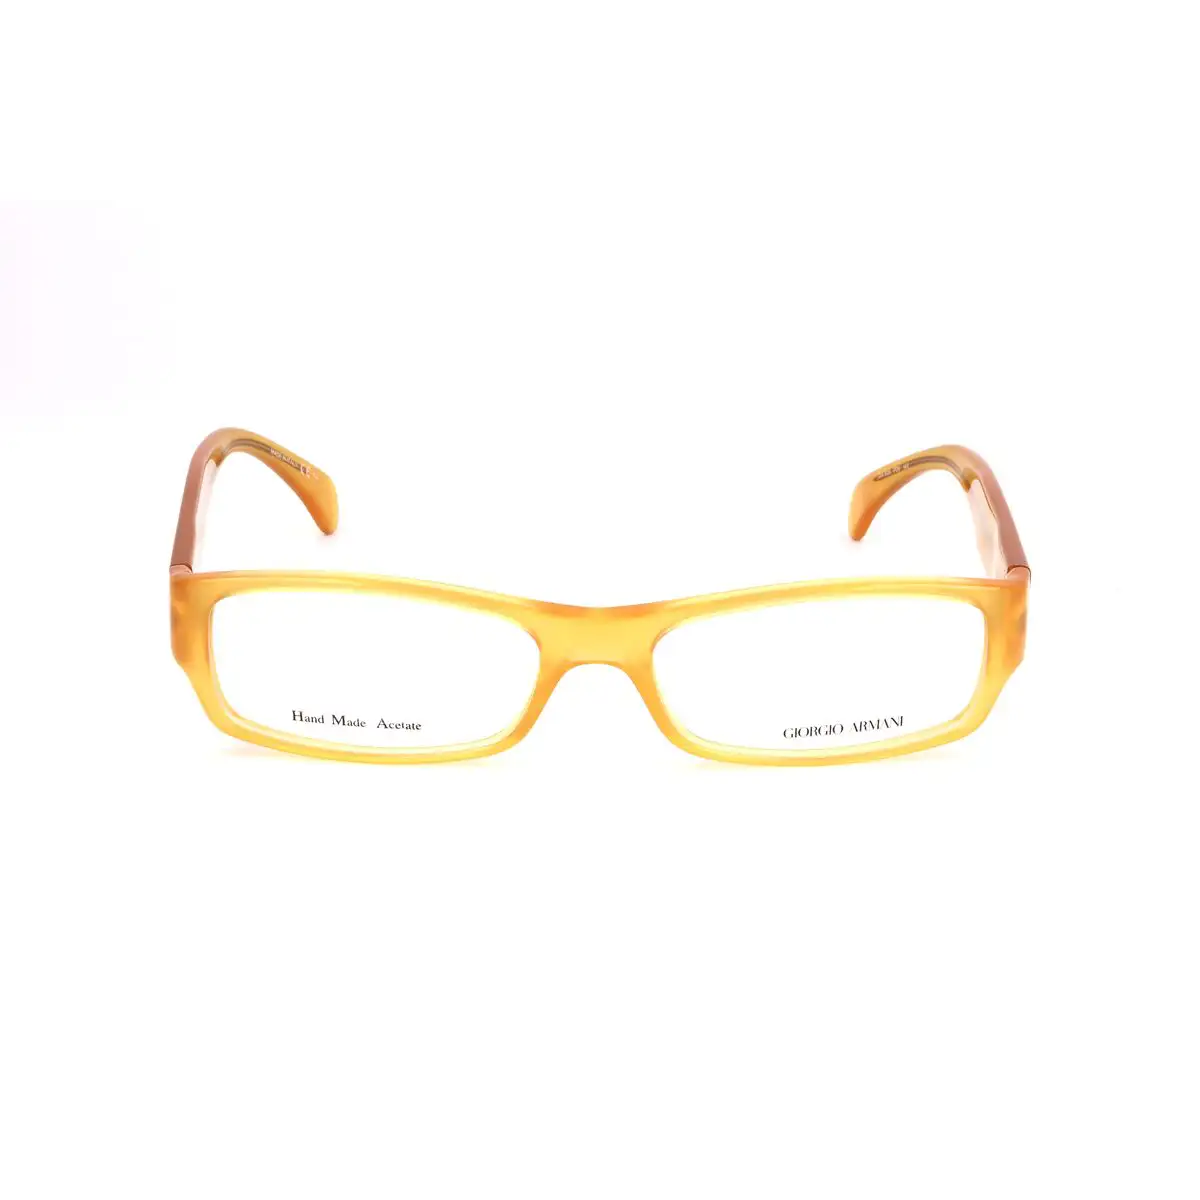 Monture de lunettes homme armani ga 806 pd9 55 o 55 mm jaune_2411. DIAYTAR SENEGAL - Là où Choisir est un Acte d'Amour pour la Culture Sénégalaise. Explorez notre gamme et choisissez des produits qui célèbrent la richesse de notre patrimoine.